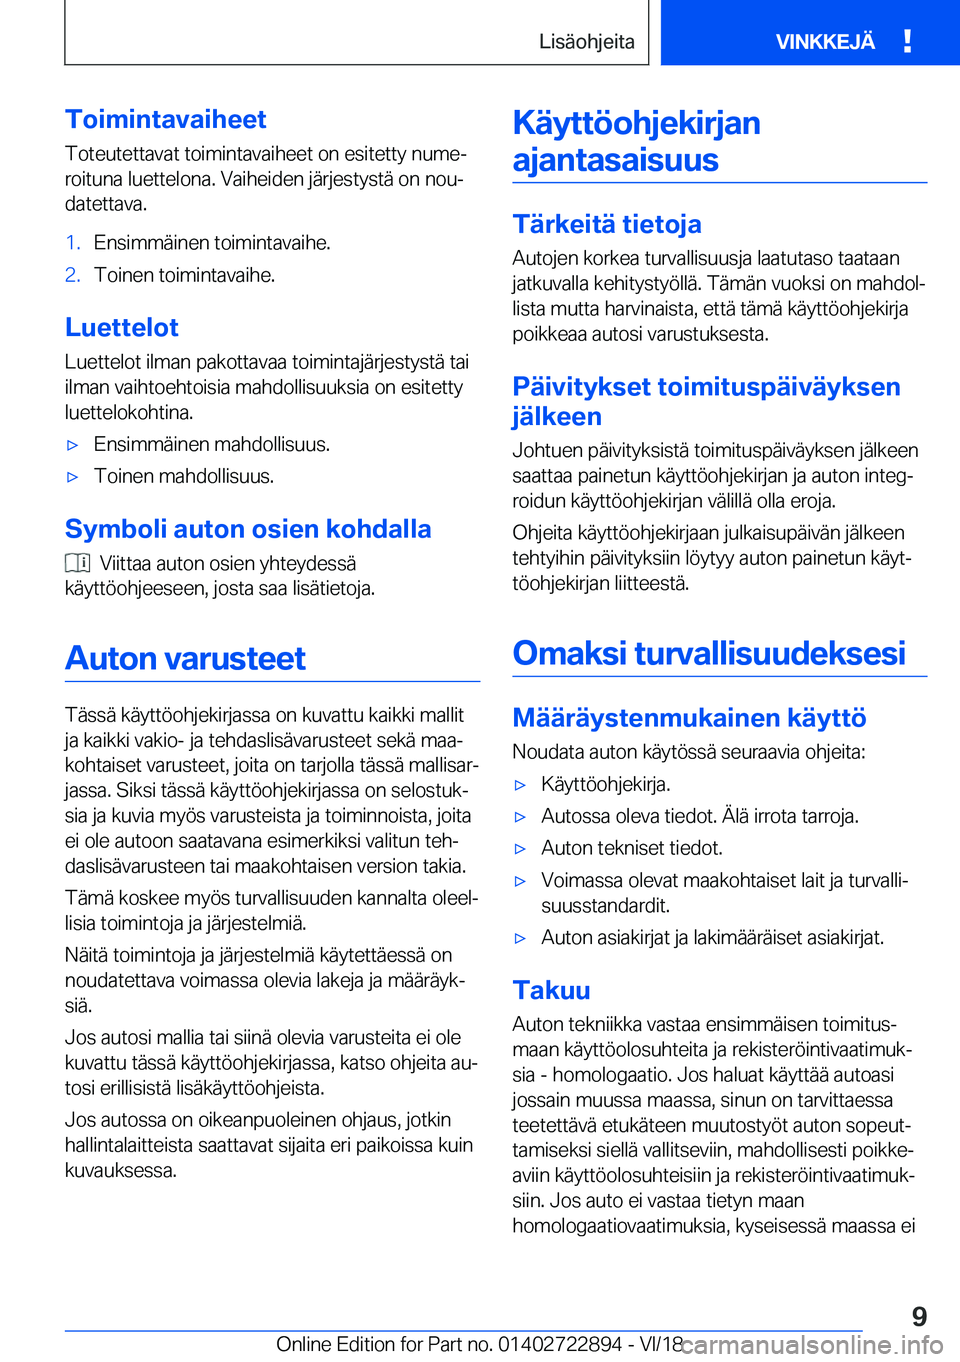 BMW X6 M 2019  Omistajan Käsikirja (in Finnish) �T�o�i�m�i�n�t�a�v�a�i�h�e�e�t�T�o�t�e�u�t�e�t�t�a�v�a�t��t�o�i�m�i�n�t�a�v�a�i�h�e�e�t��o�n��e�s�i�t�e�t�t�y��n�u�m�ej
�r�o�i�t�u�n�a��l�u�e�t�t�e�l�o�n�a�.��V�a�i�h�e�i�d�e�n��j�